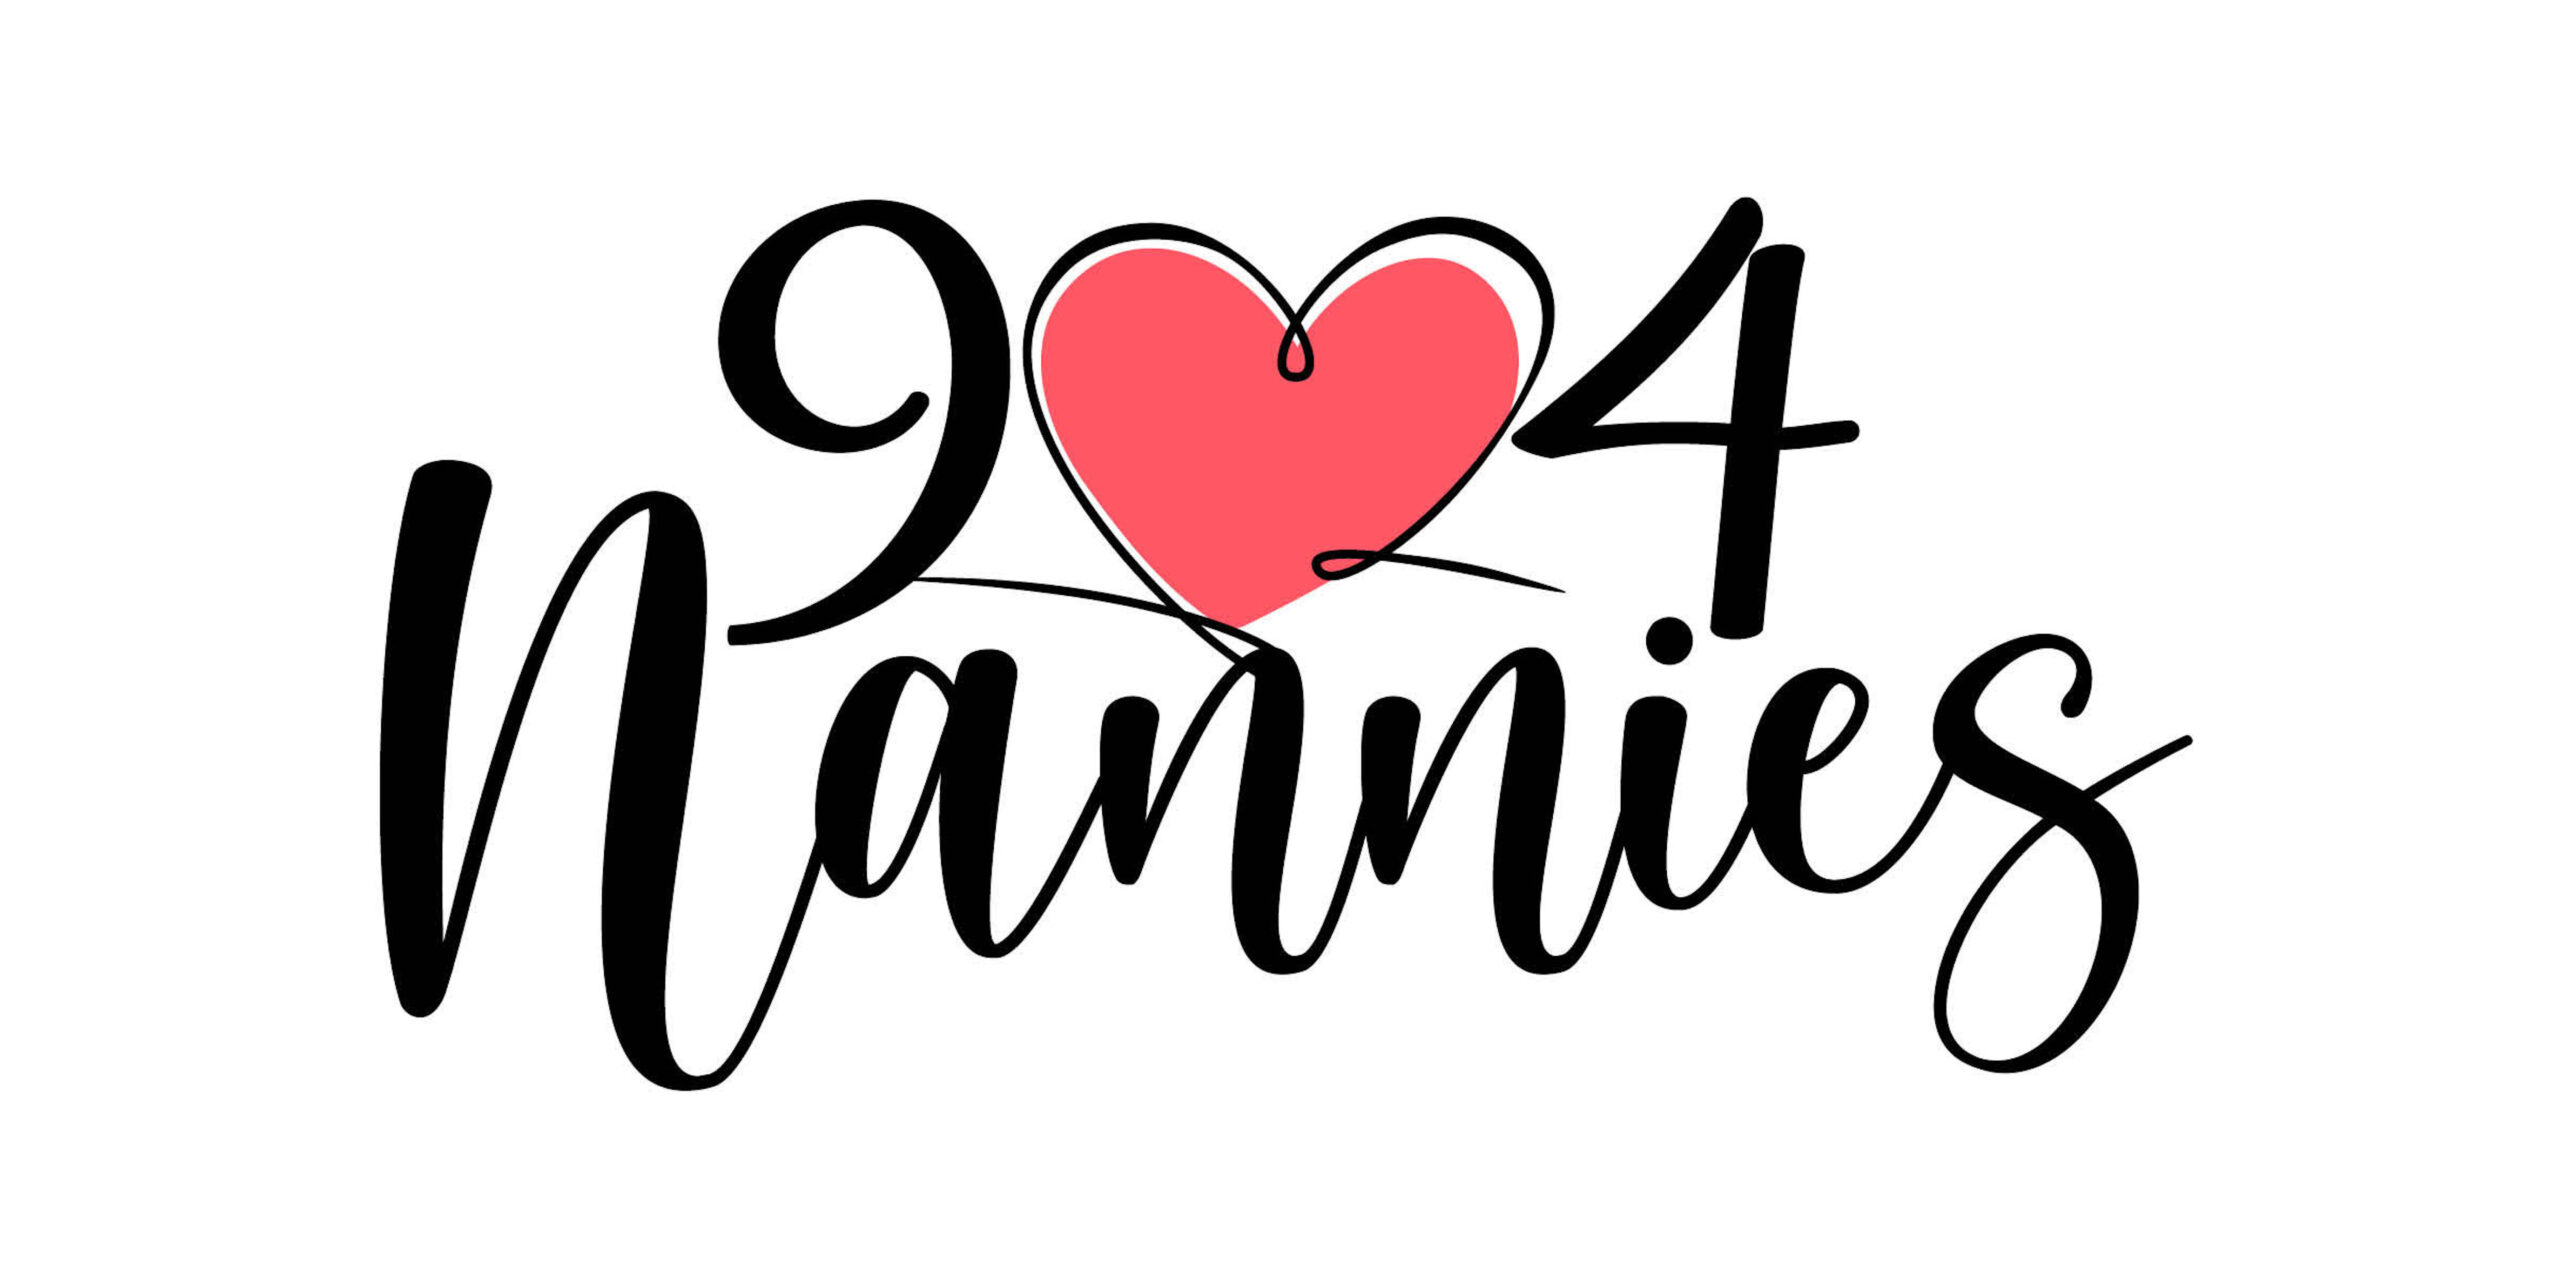 904 Nannies Families!